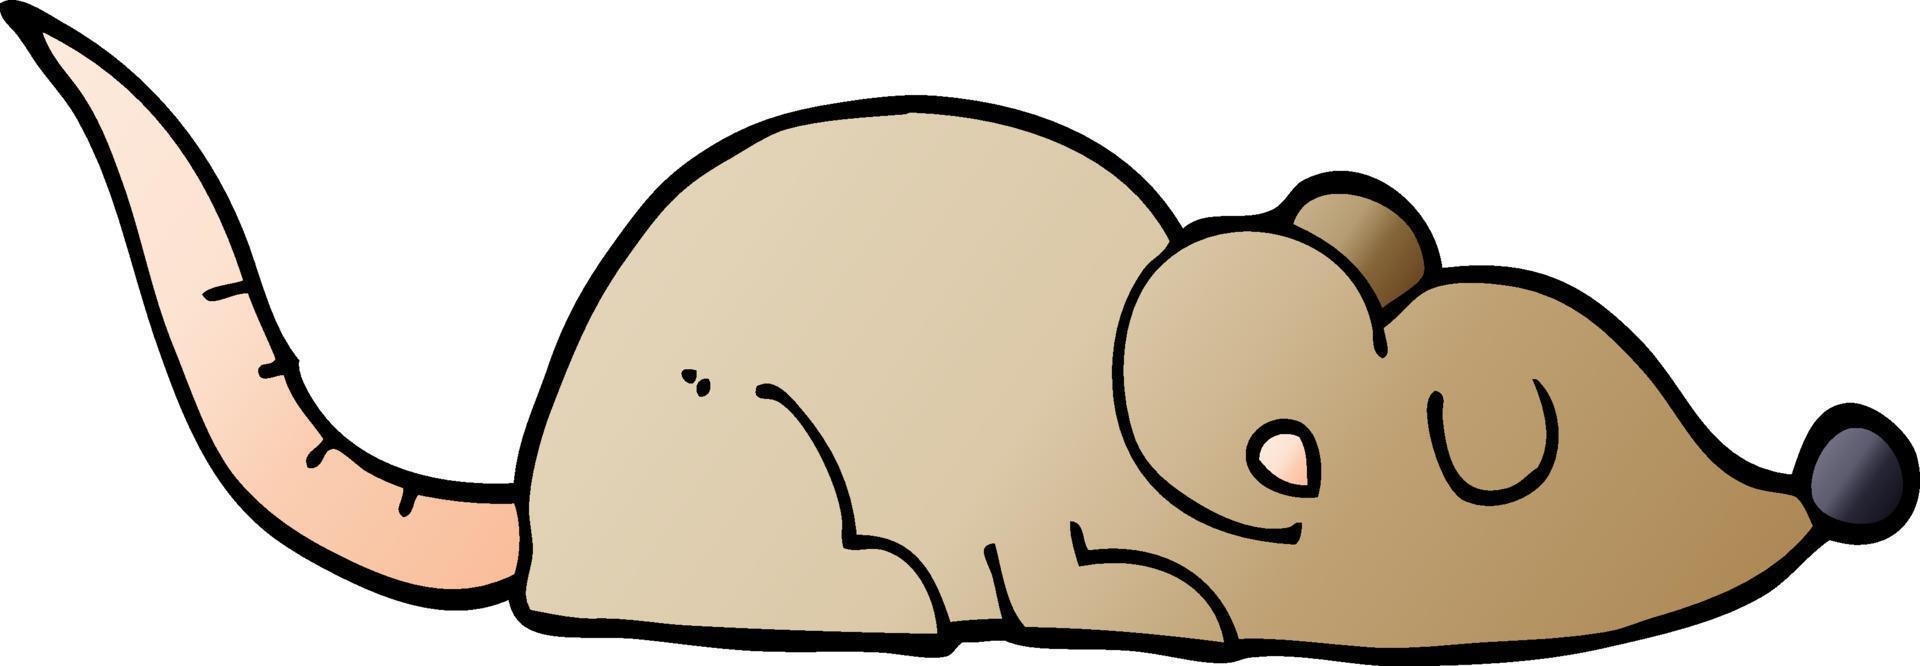 cartoon doodle peaceful mouse vector